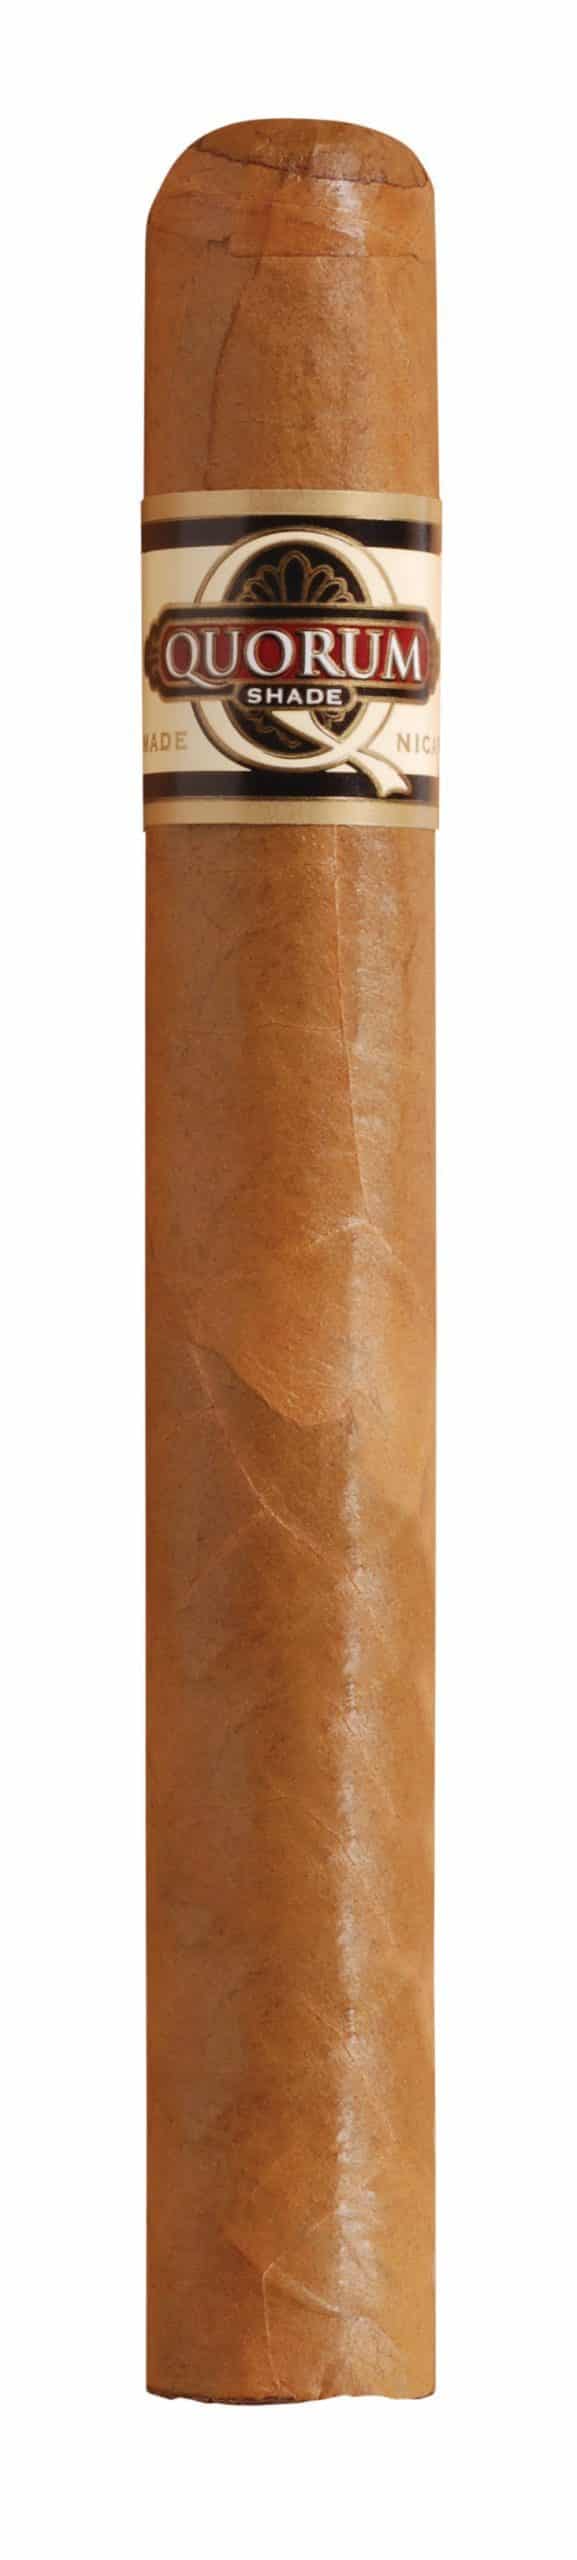 quorum shade toro single cigar